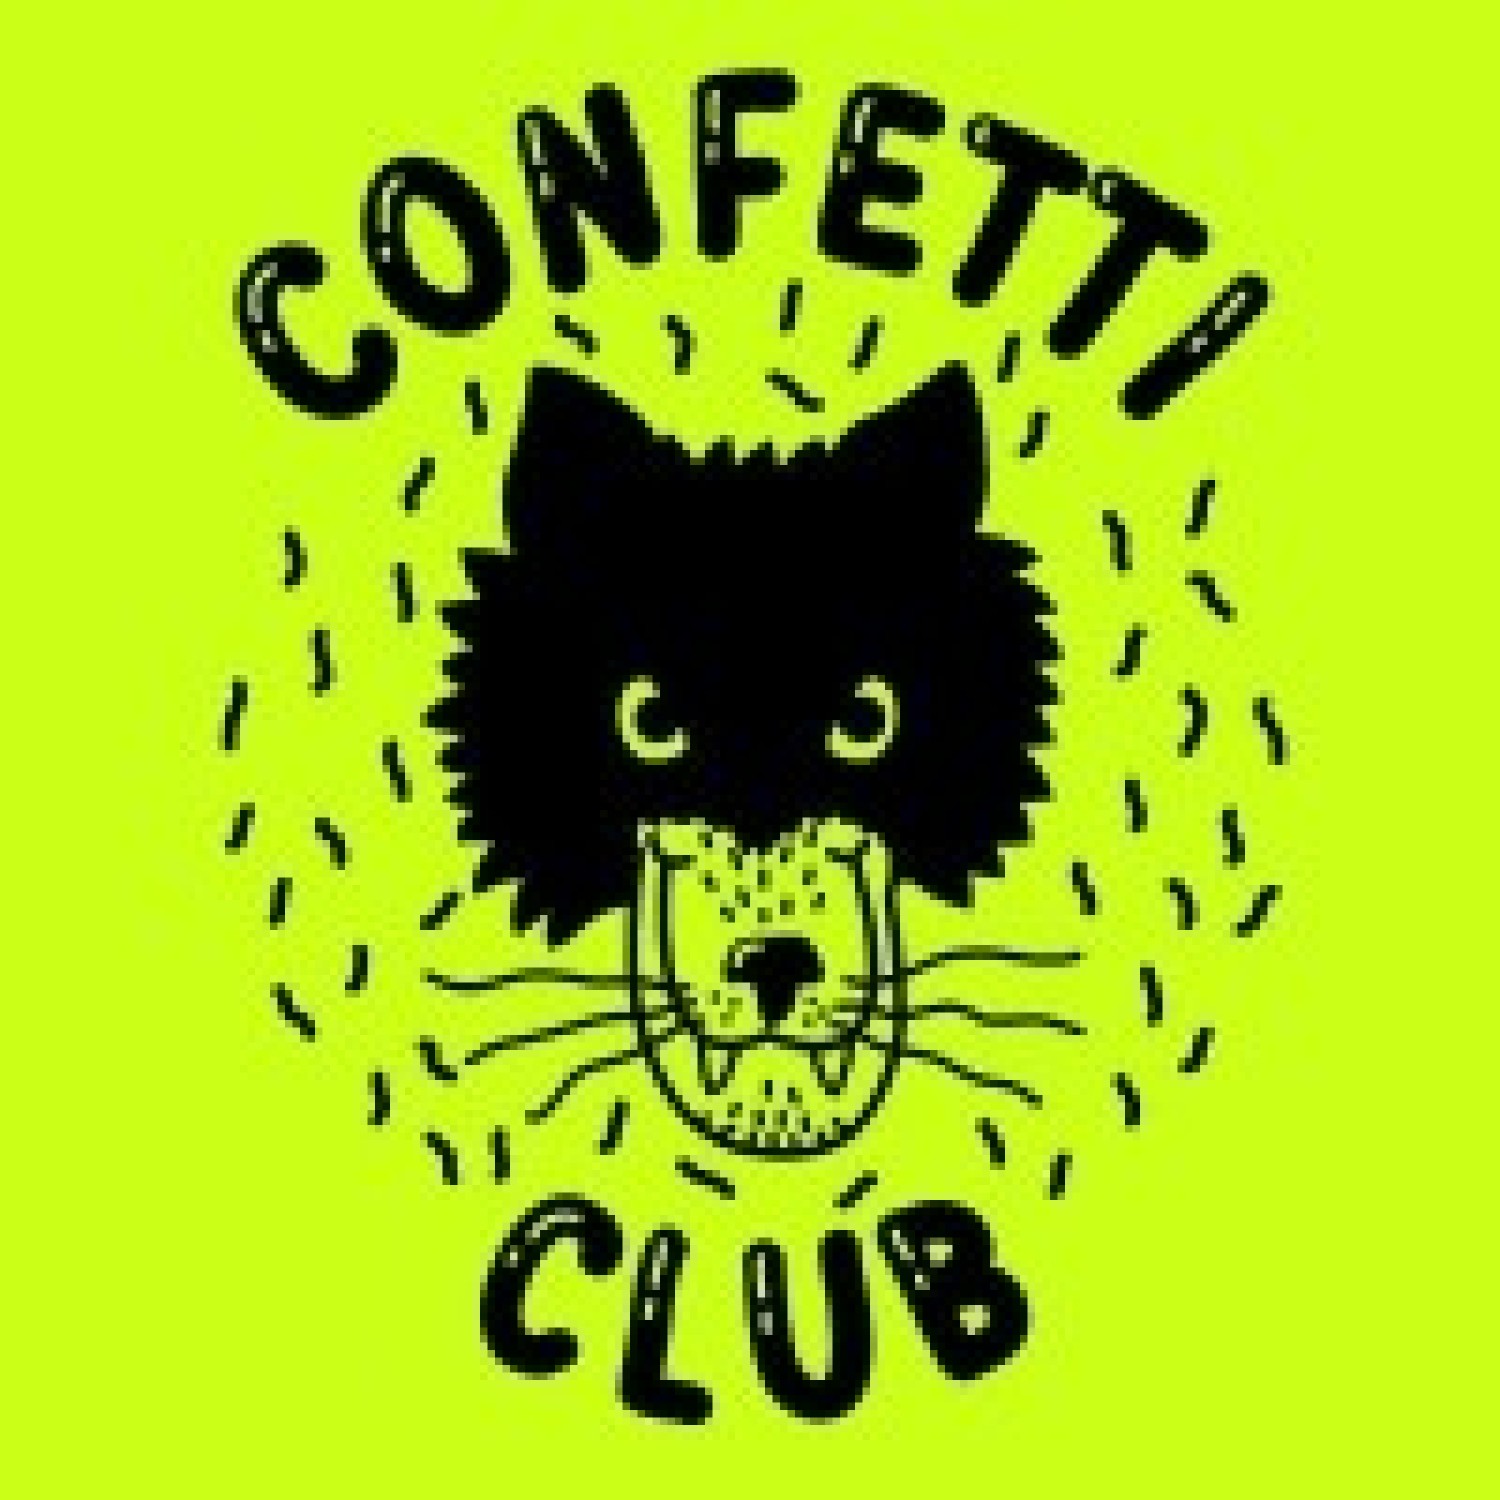 Confetti Club